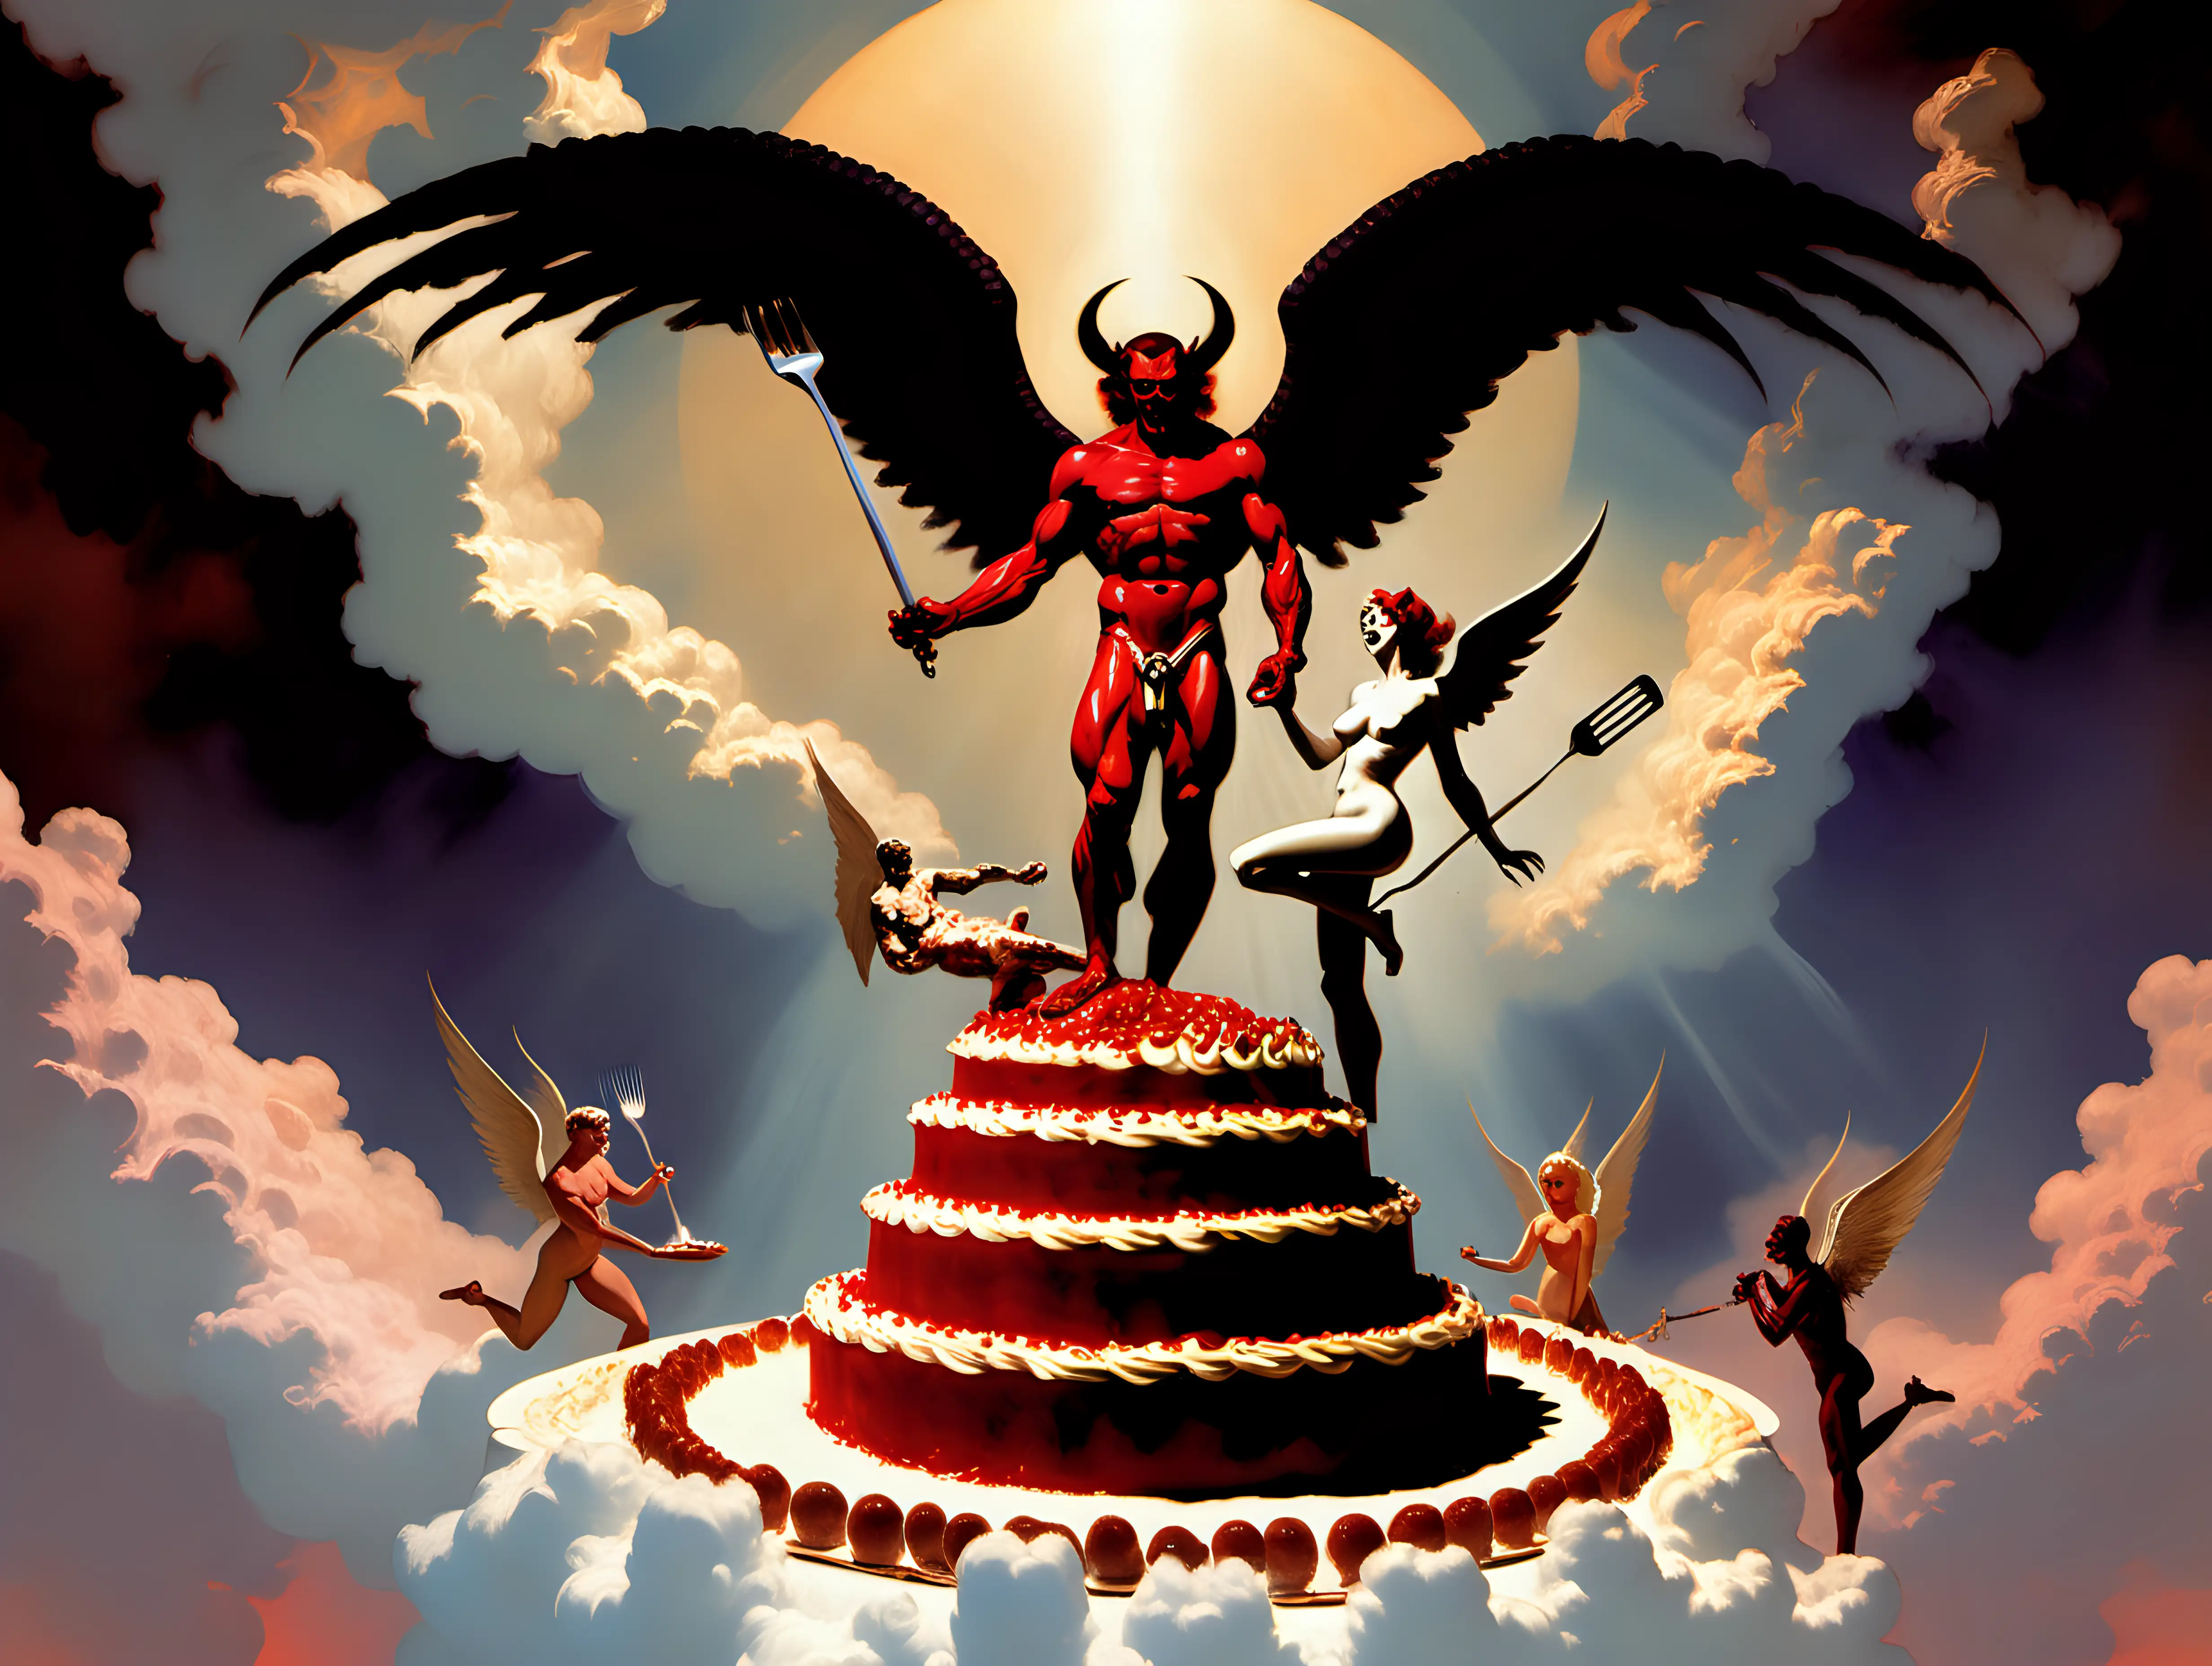 AI Art: Super Ultimate Evolution Devil Angel Form by @Tentabomb